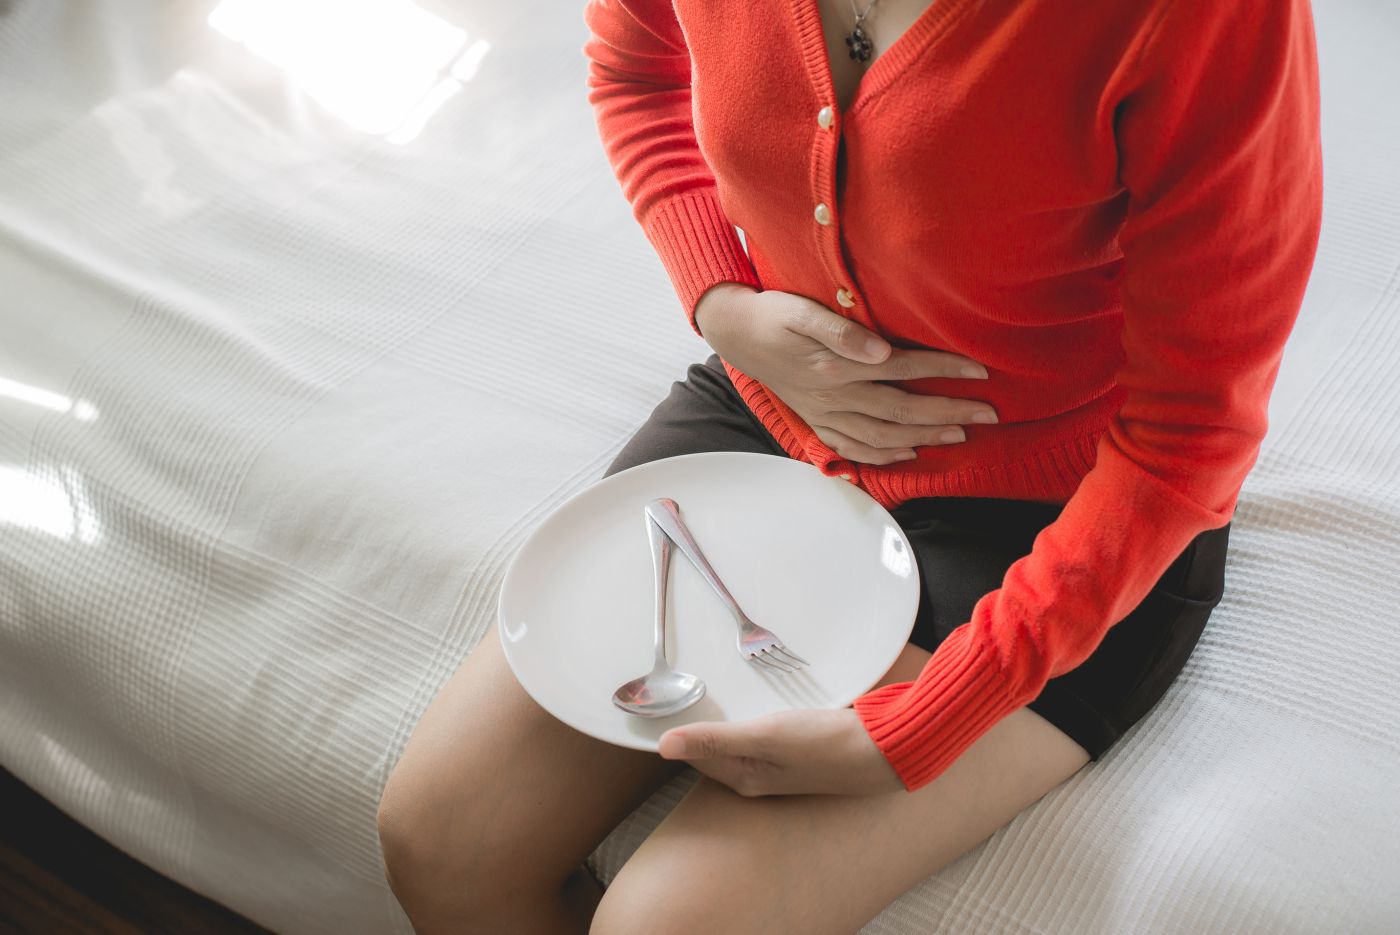 Πόνος στην κοιλιά μετά το φαγητό: Αυτές είναι οι πιο πιθανές αιτίες